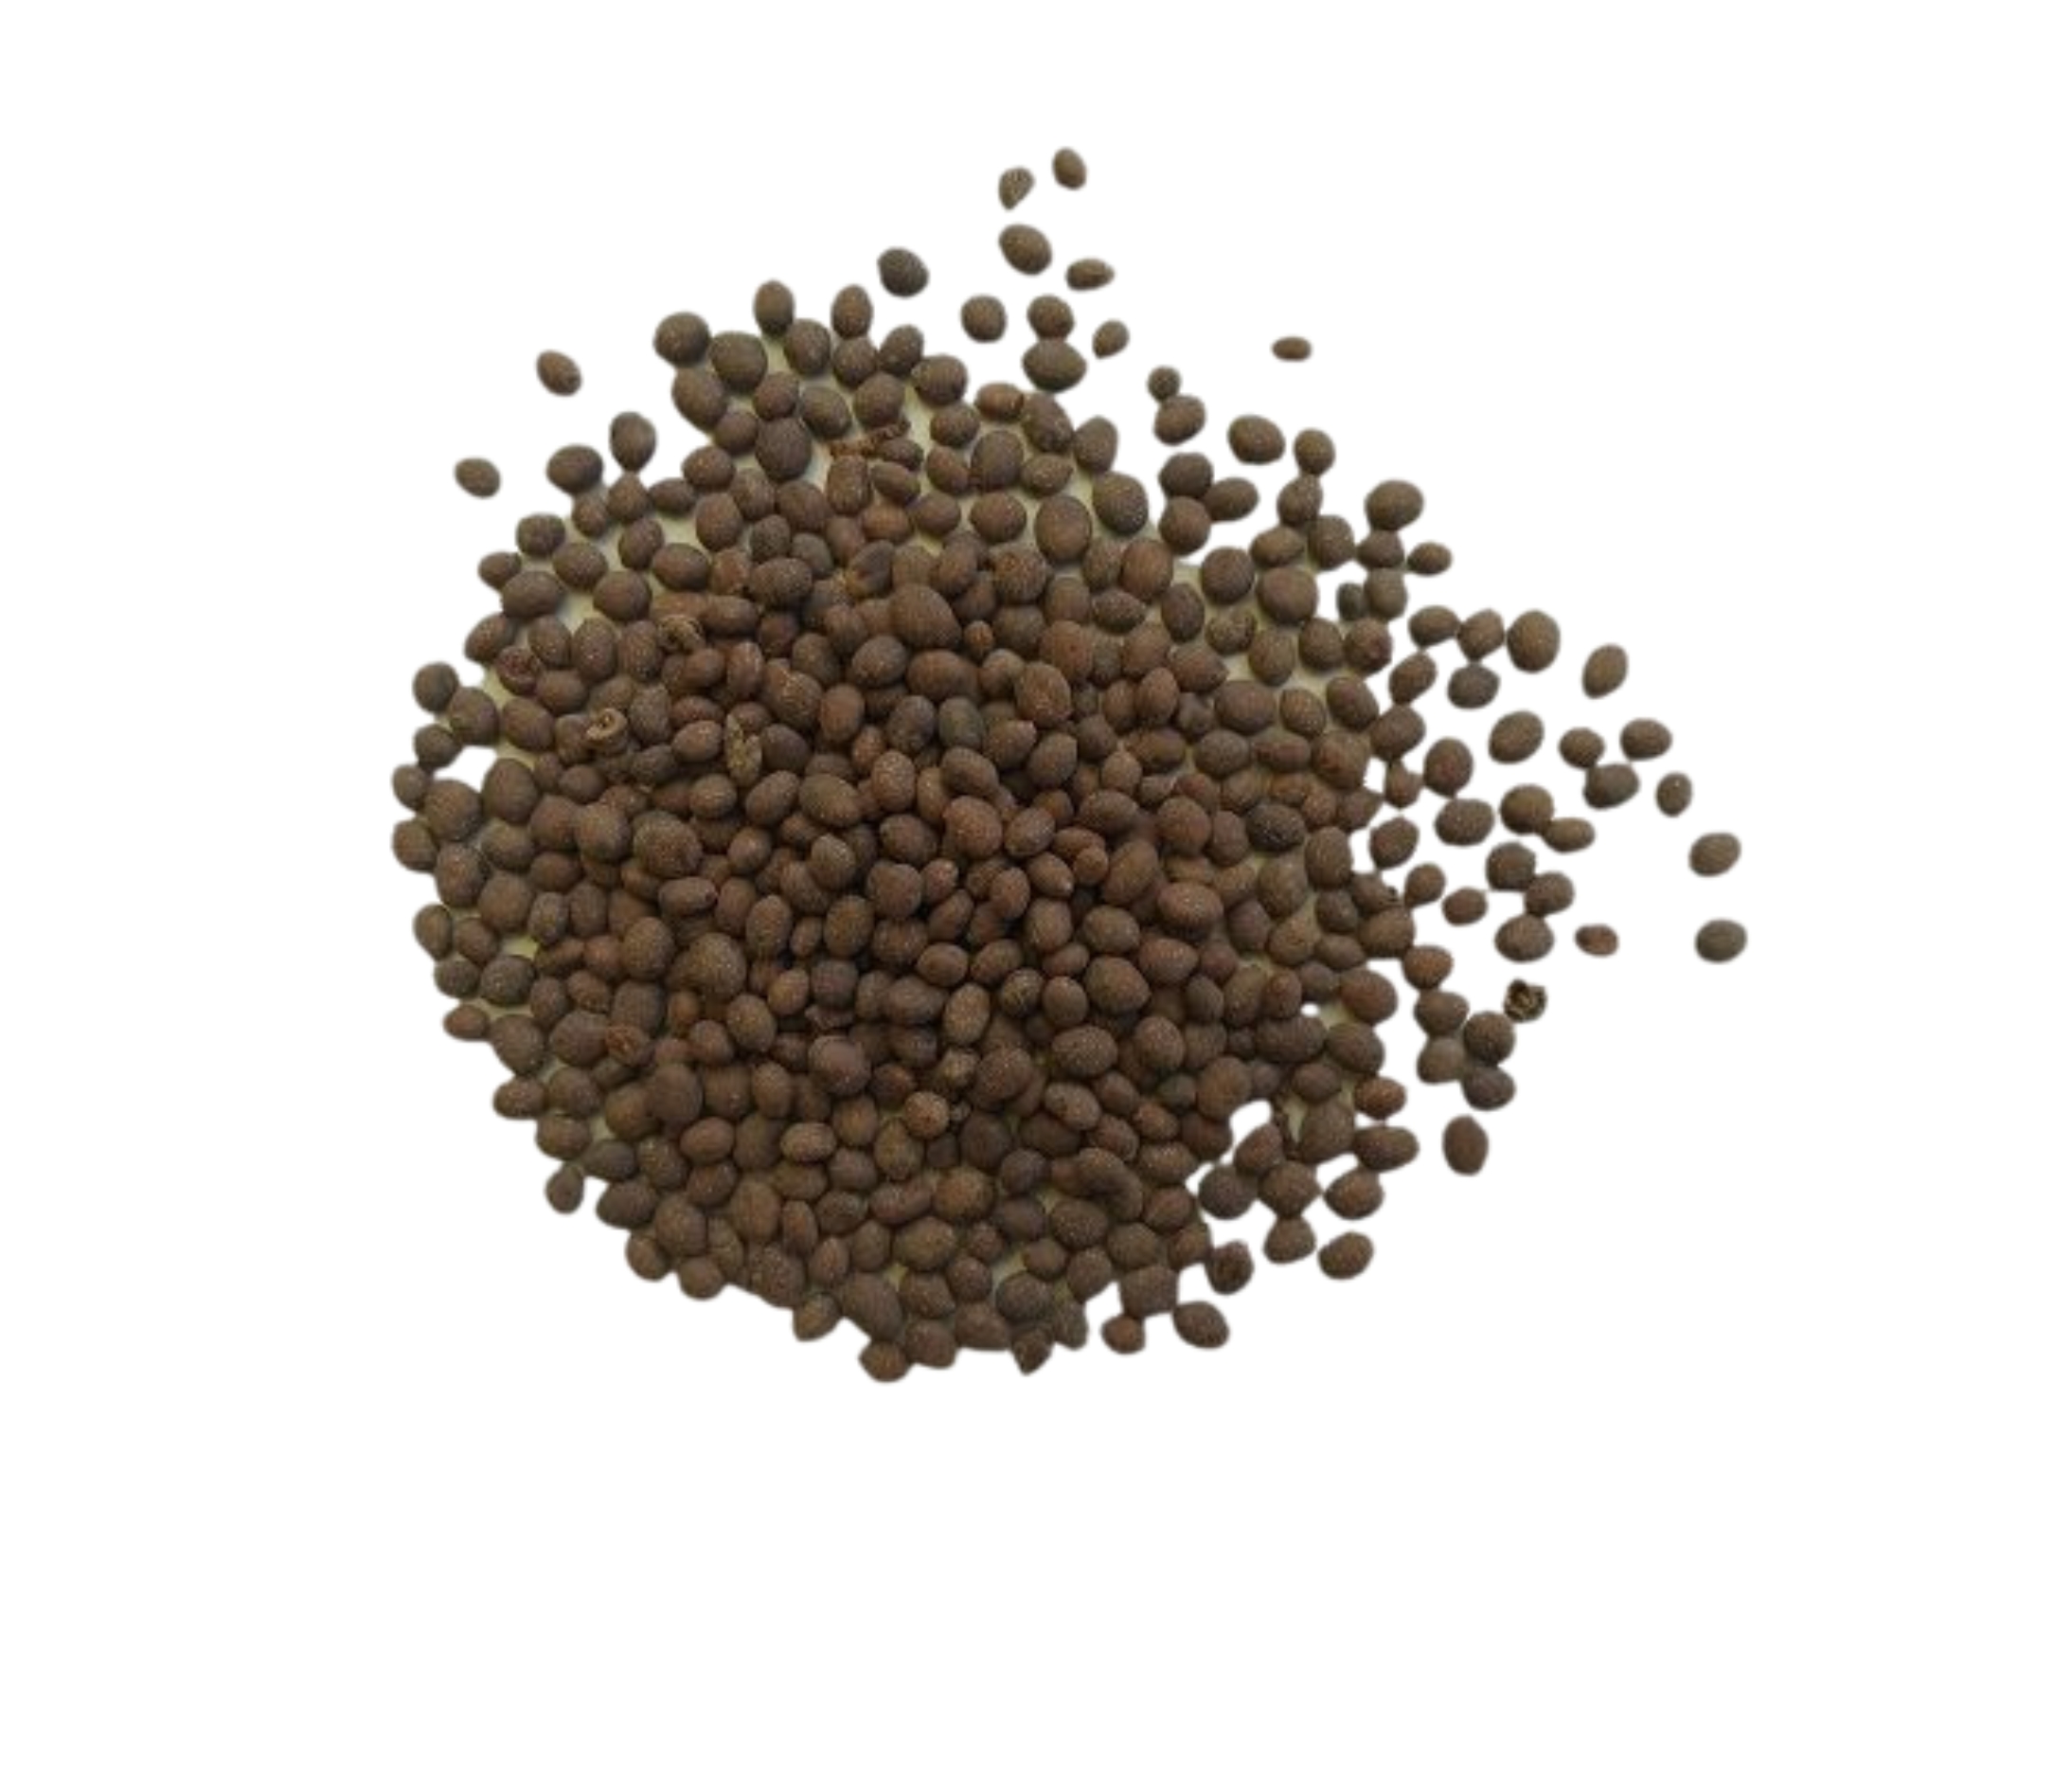 alyssum-wonderland-seeds-per-package-10-000-pcs